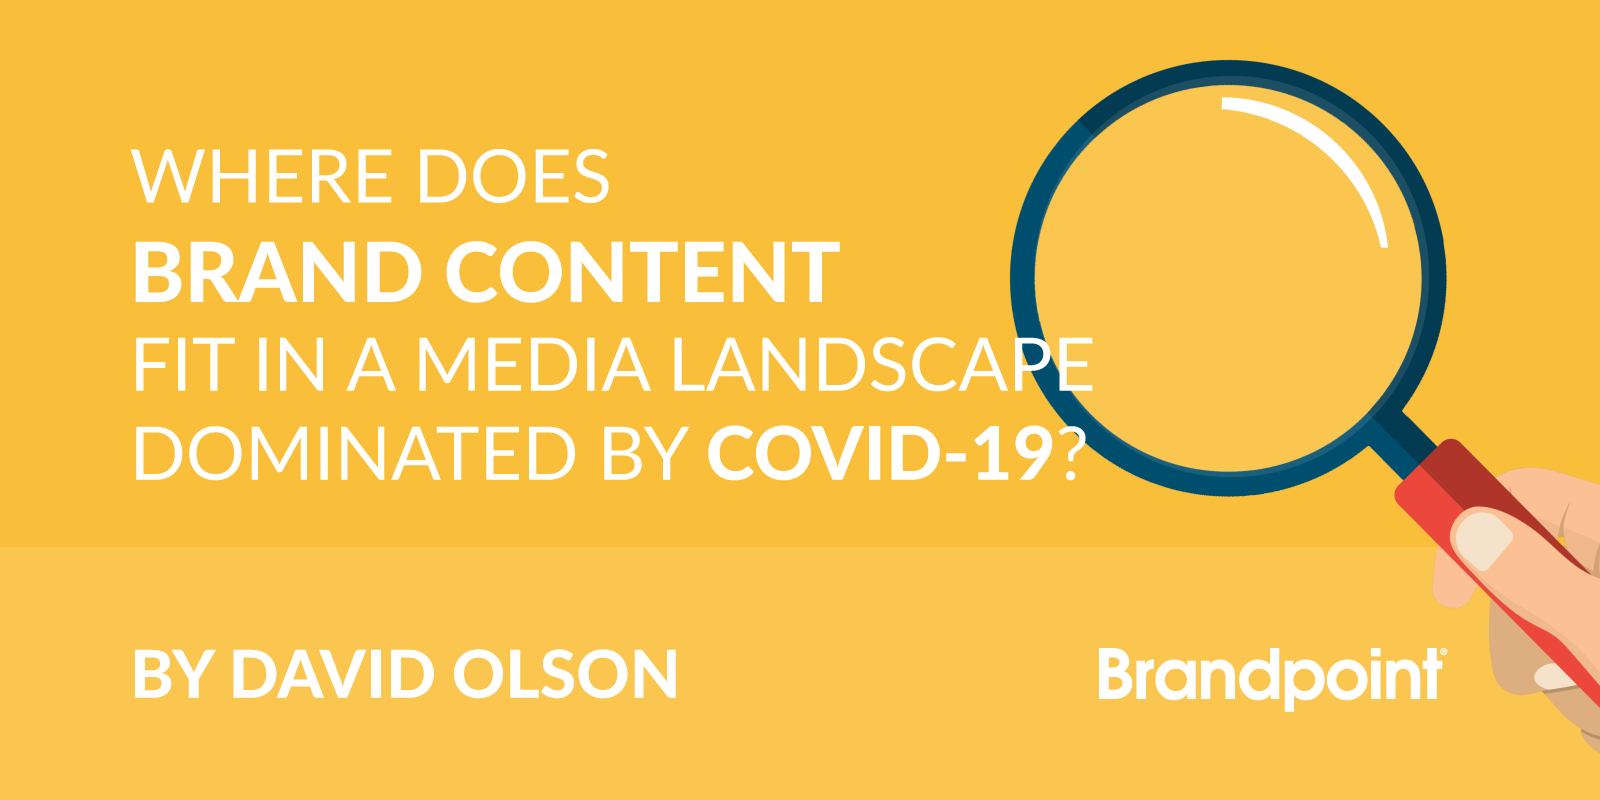 Brand Content & COVID